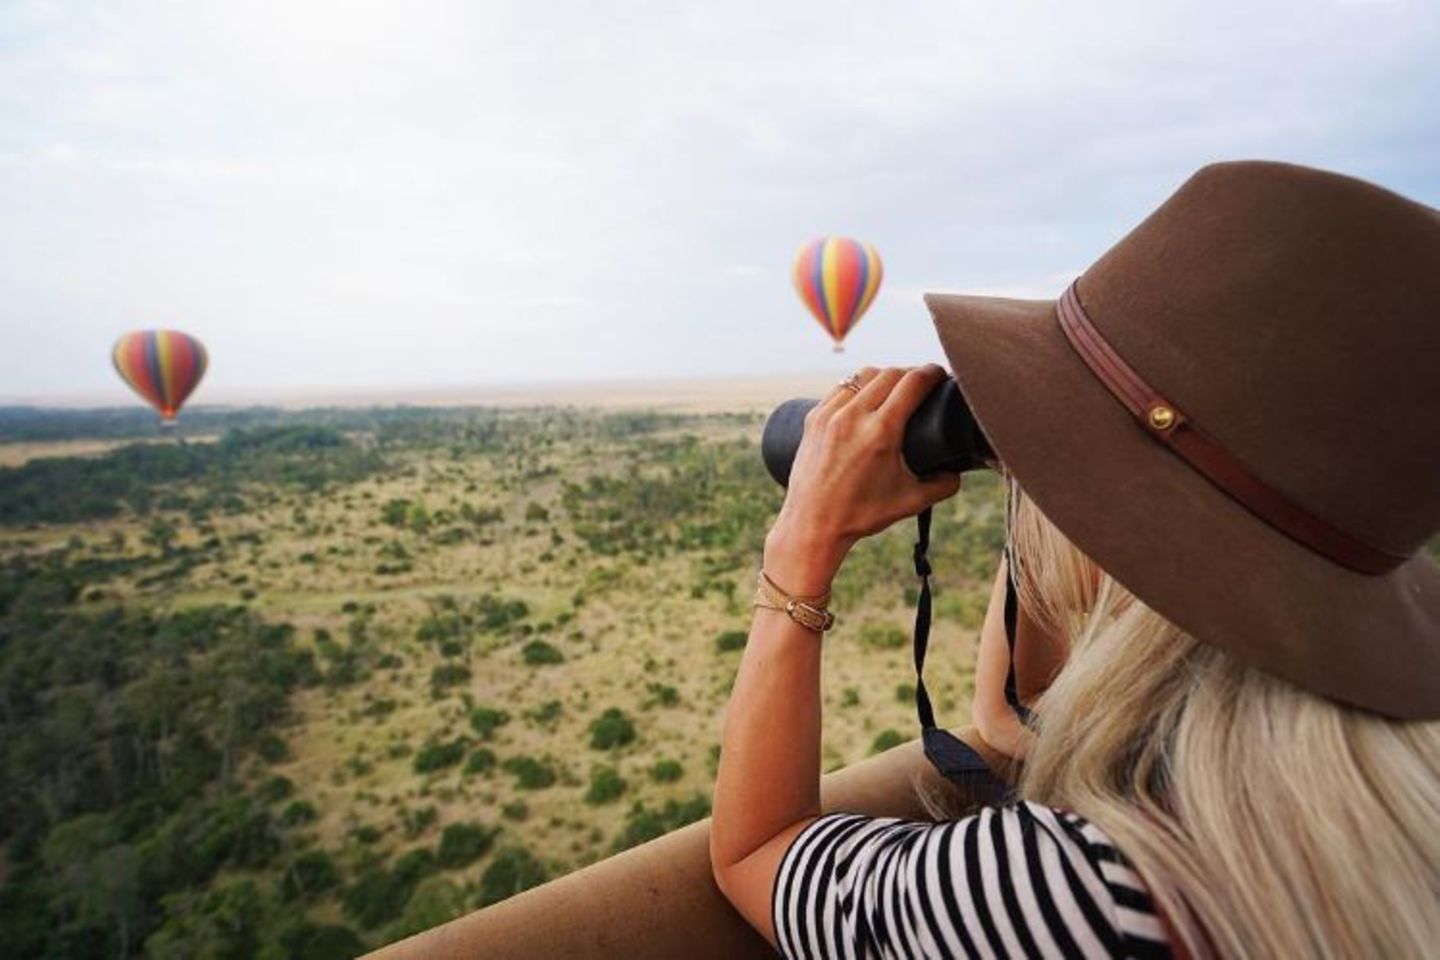 Einen auch so schon sagenhaften Ausblick schmücken bunte Heißluftballons über Kenias Savanne. Dank des Fernglases hat Schauspielerin Julianne Hough alles im Blick.